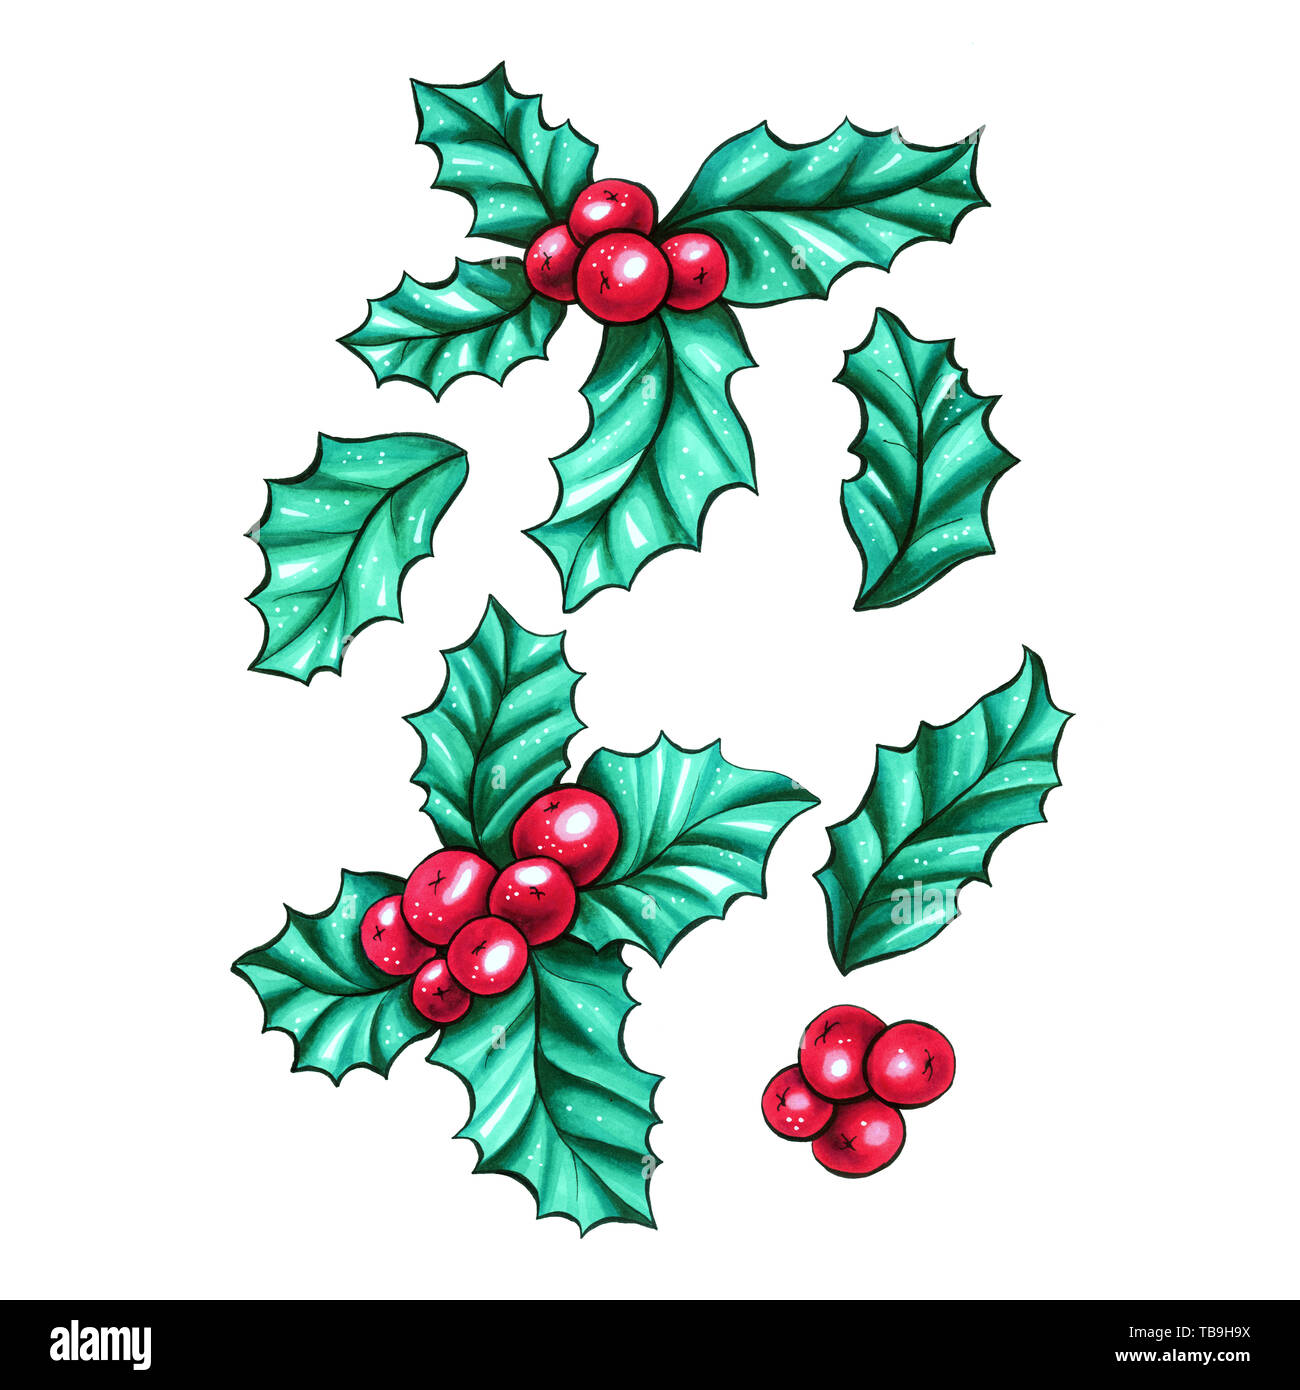 Weihnachten rote Beeren Kalifornien holly isoliert Pflanzen Sammlung für Weihnachten Geschenk Design. Marker Farbige botanische Zeichnungen. Stockfoto